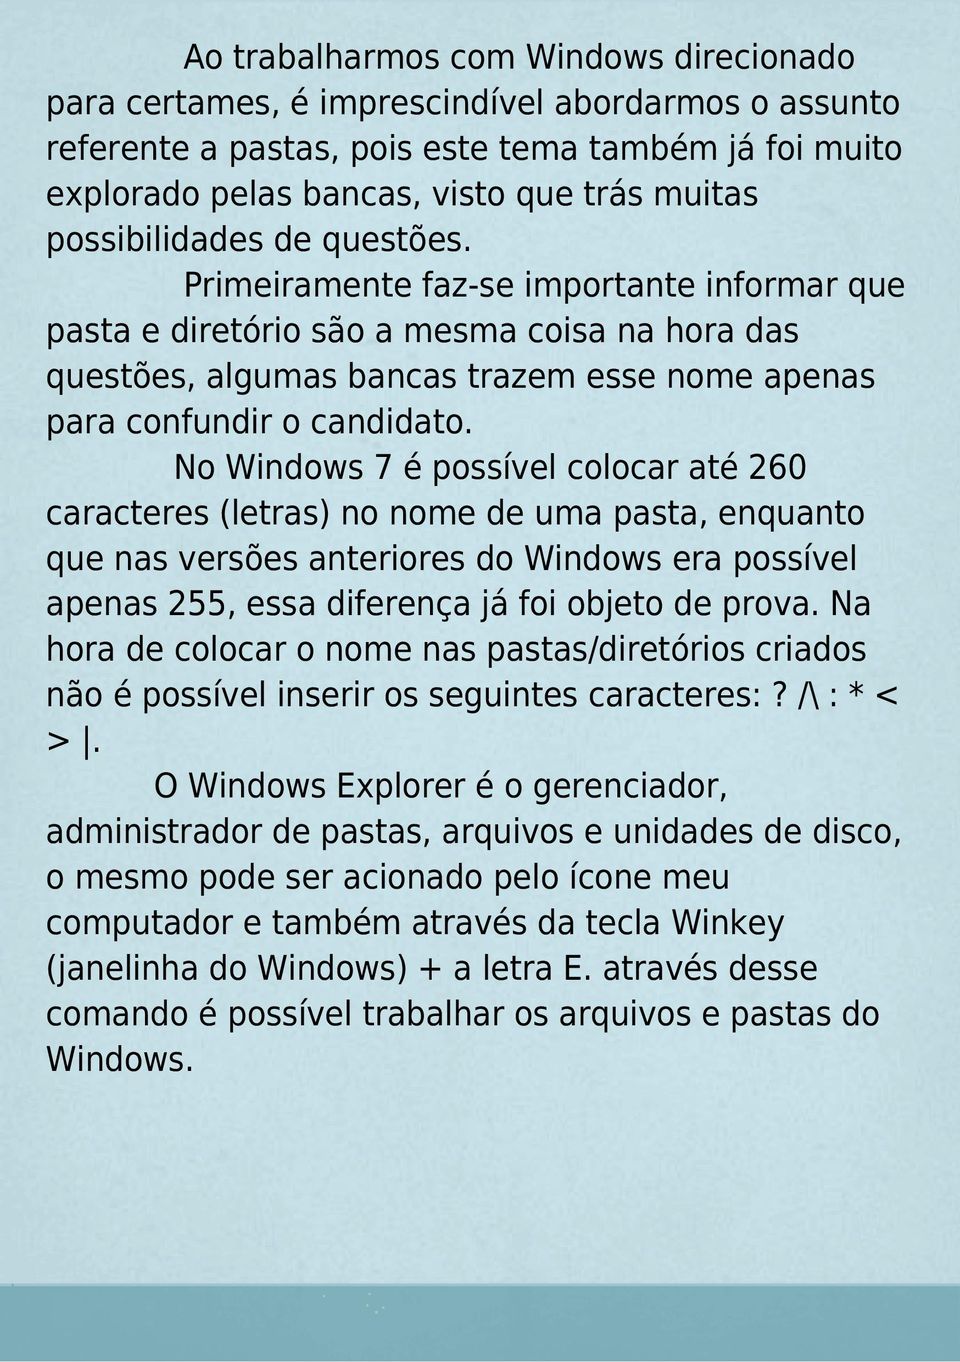 No Windows 7 é possível colocar até 260 caracteres (letras) no nome de uma pasta, enquanto que nas versões anteriores do Windows era possível apenas 255, essa diferença já foi objeto de prova.